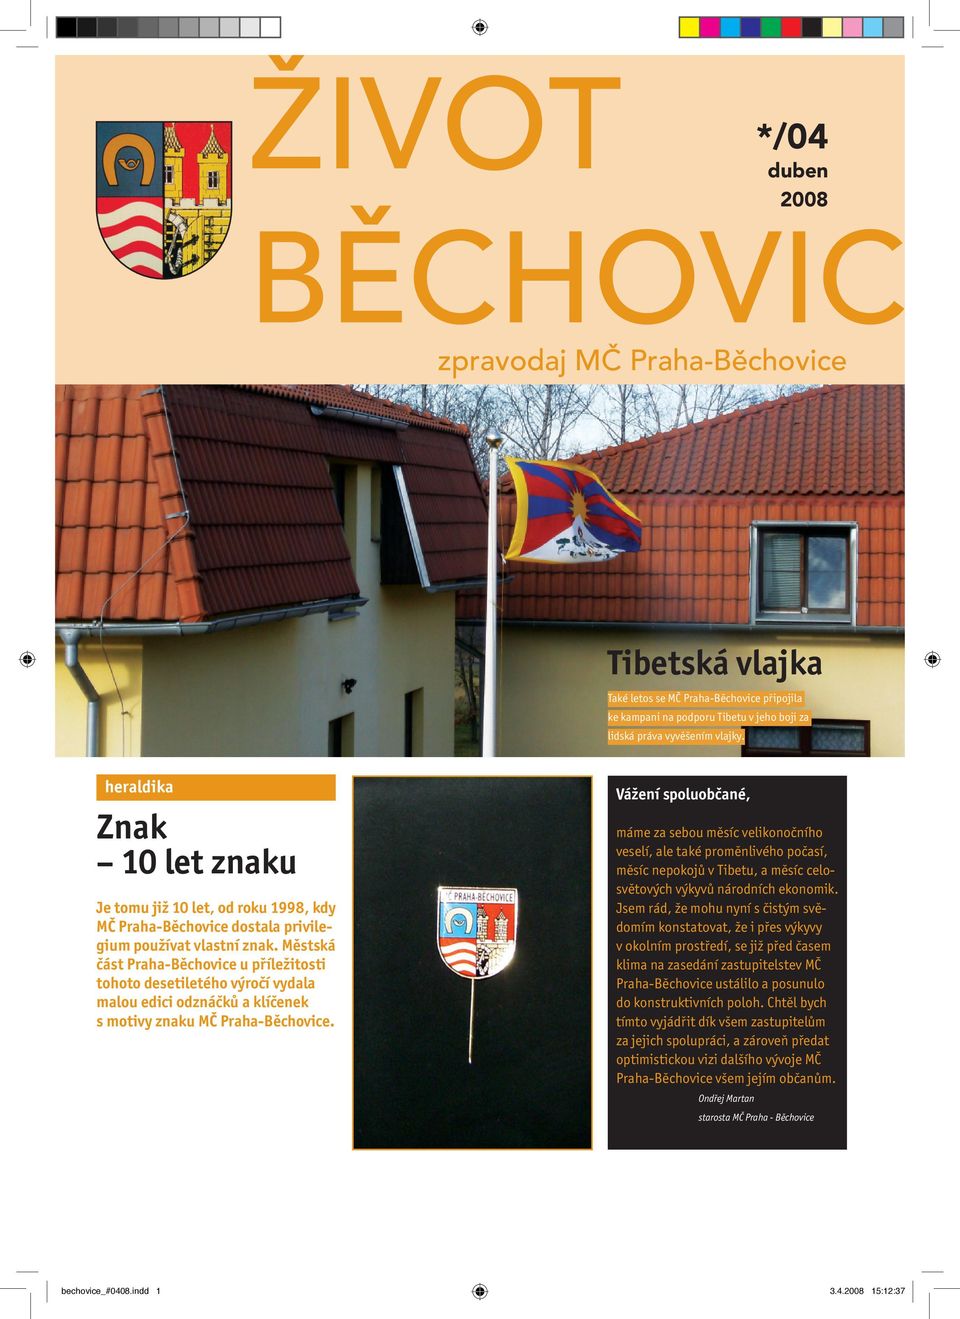 Městská část Praha-Běchovice u příležitosti tohoto desetiletého výročí vydala malou edici odznáčků a klíčenek s motivy znaku MČ Praha-Běchovice.